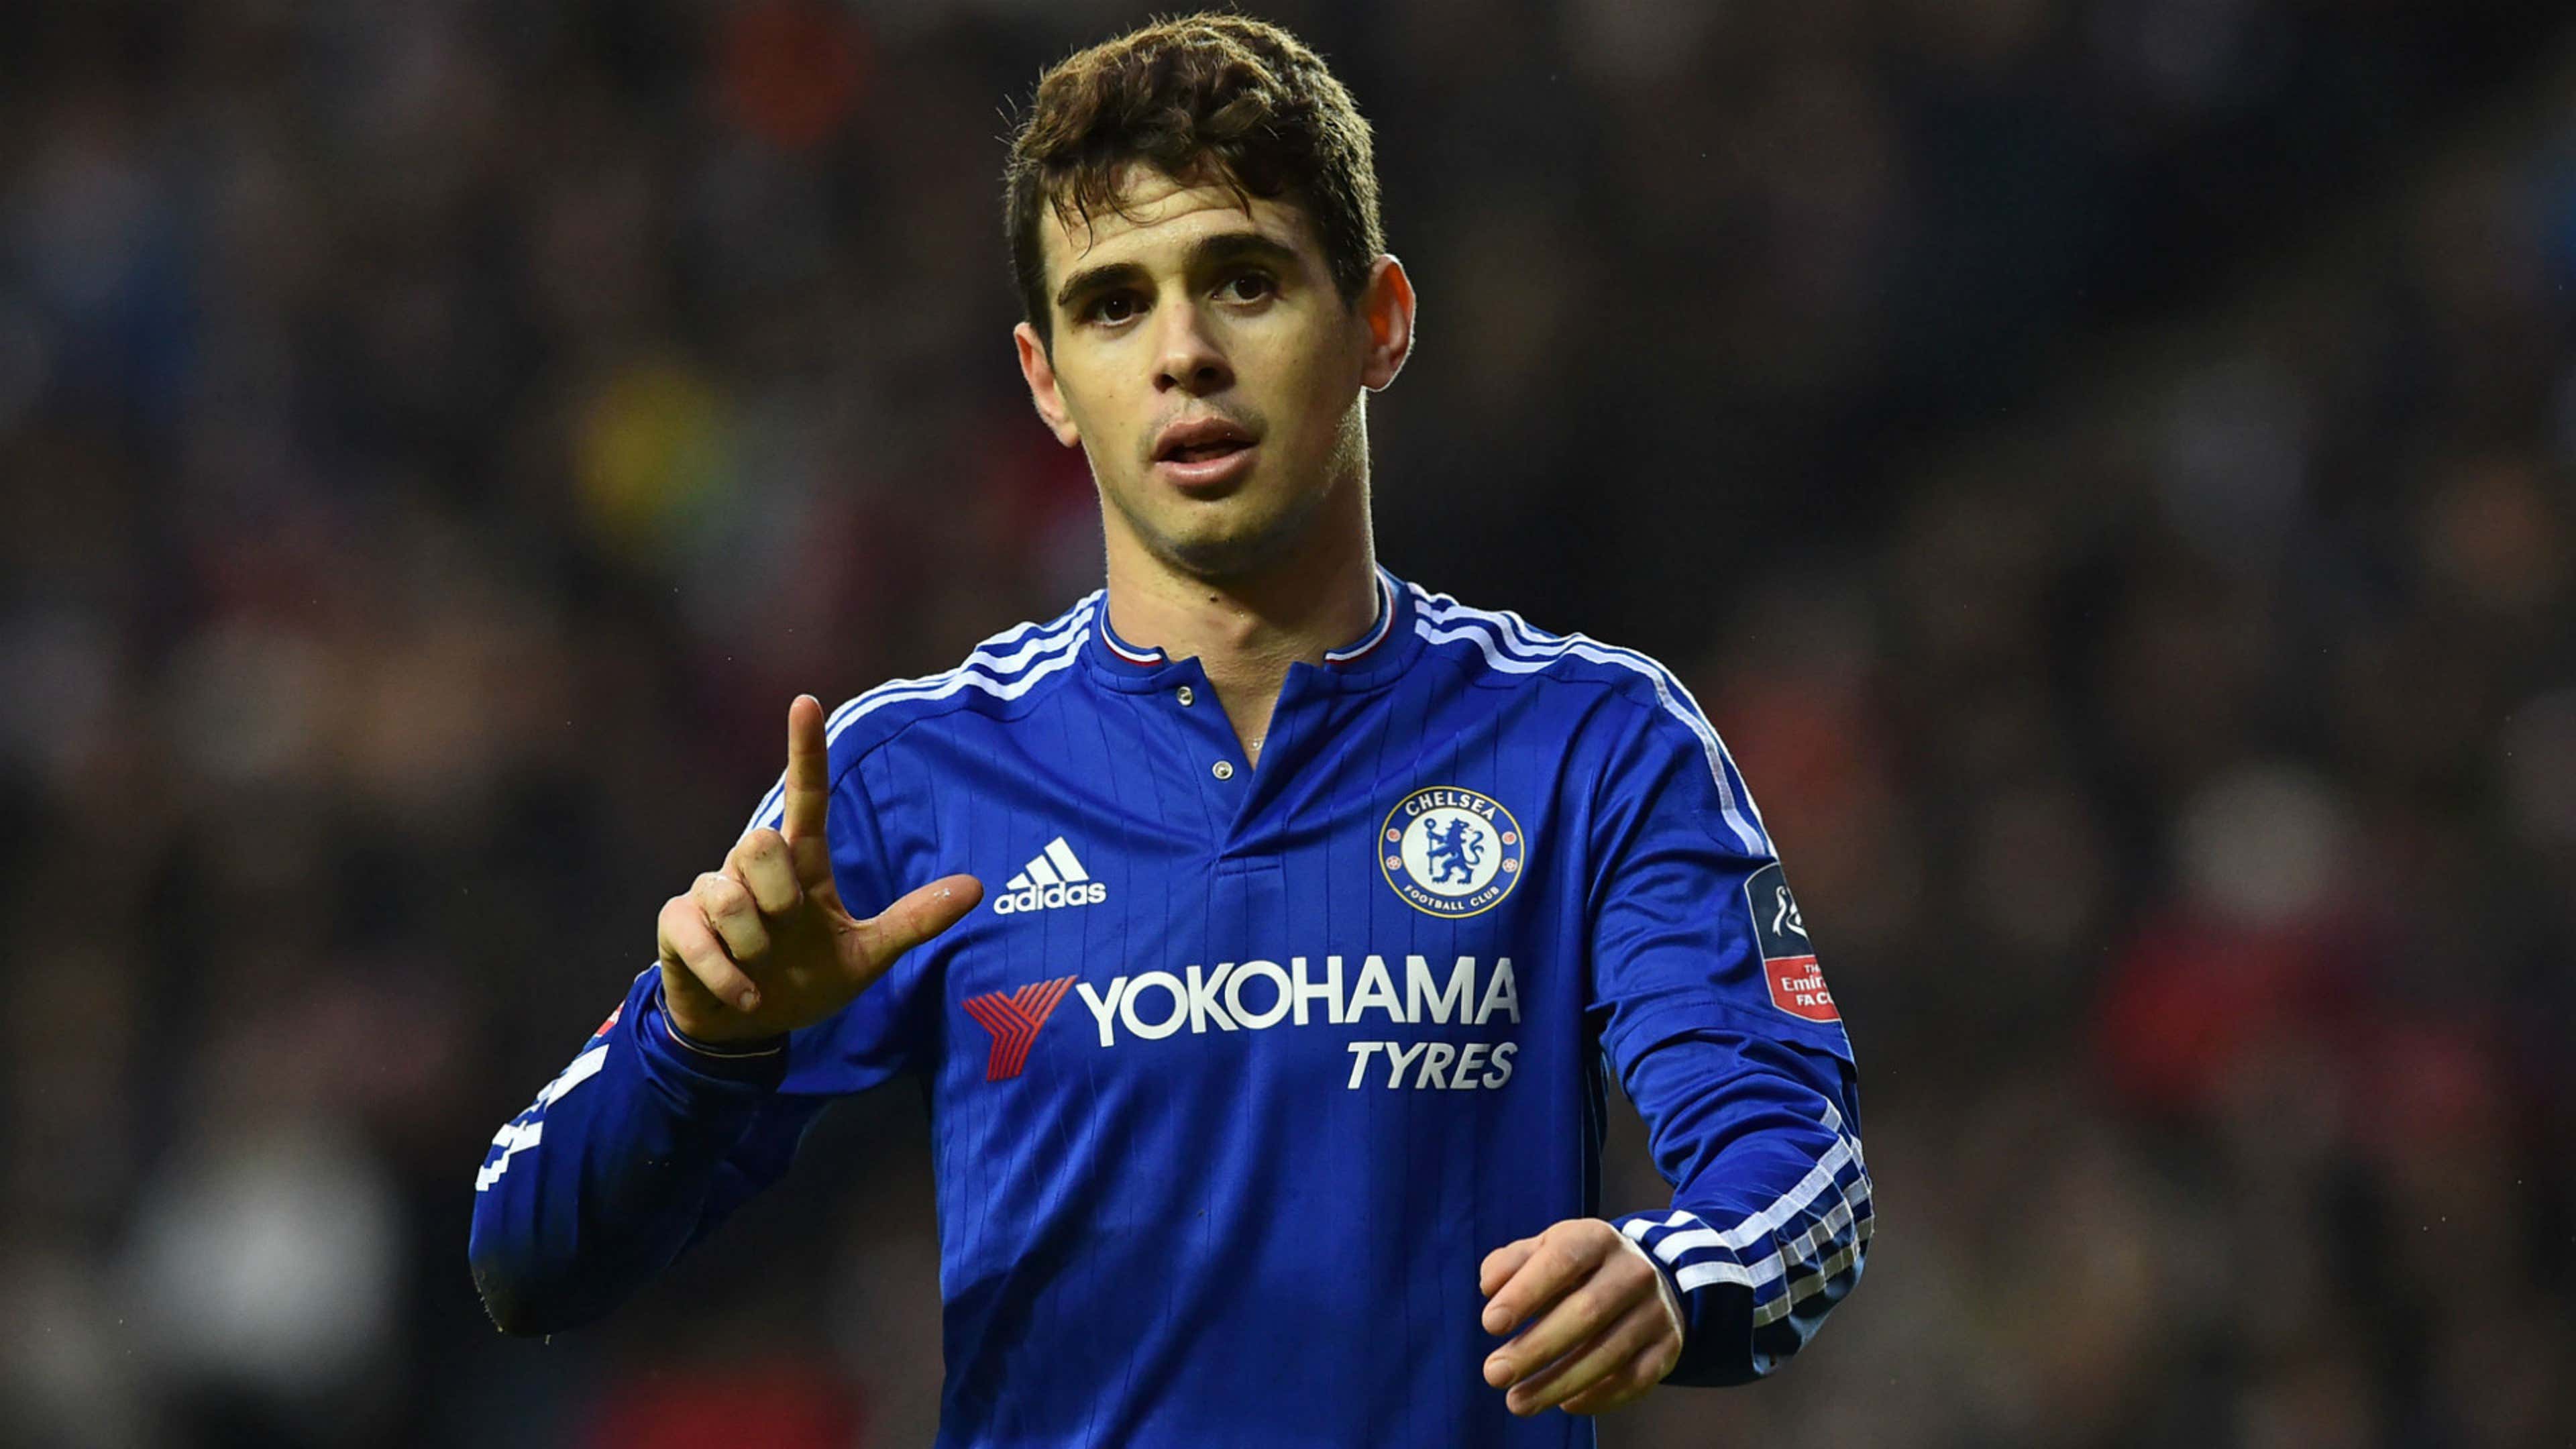 Oscar voudrait retourner à Chelsea | Goal.com Français